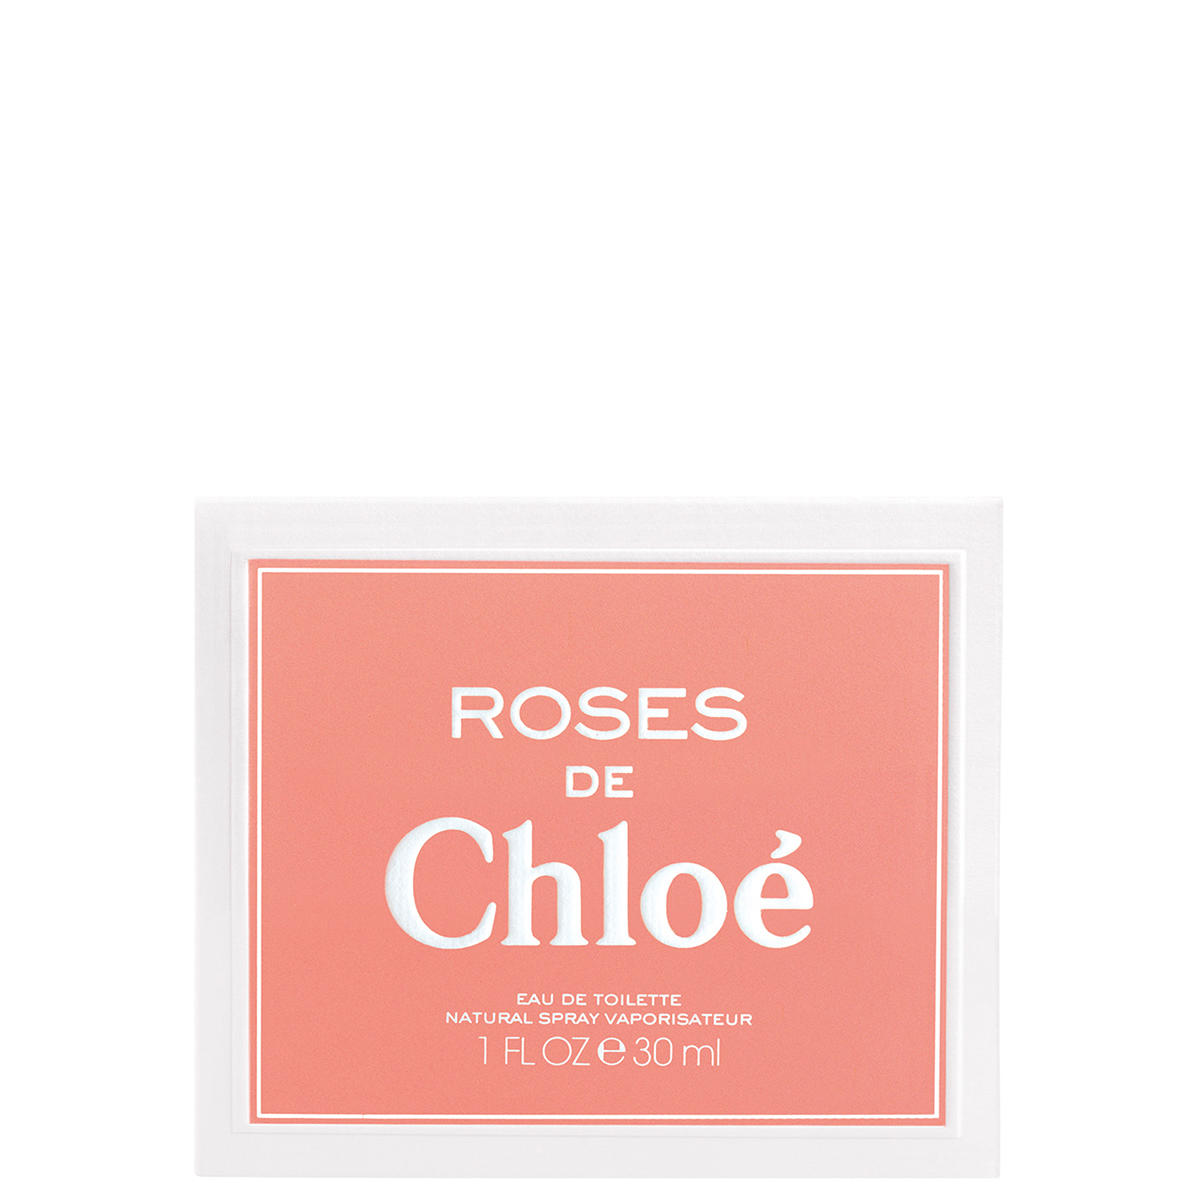 Chloé Rose Naturelle Eau de Toilette 30 ml - 3